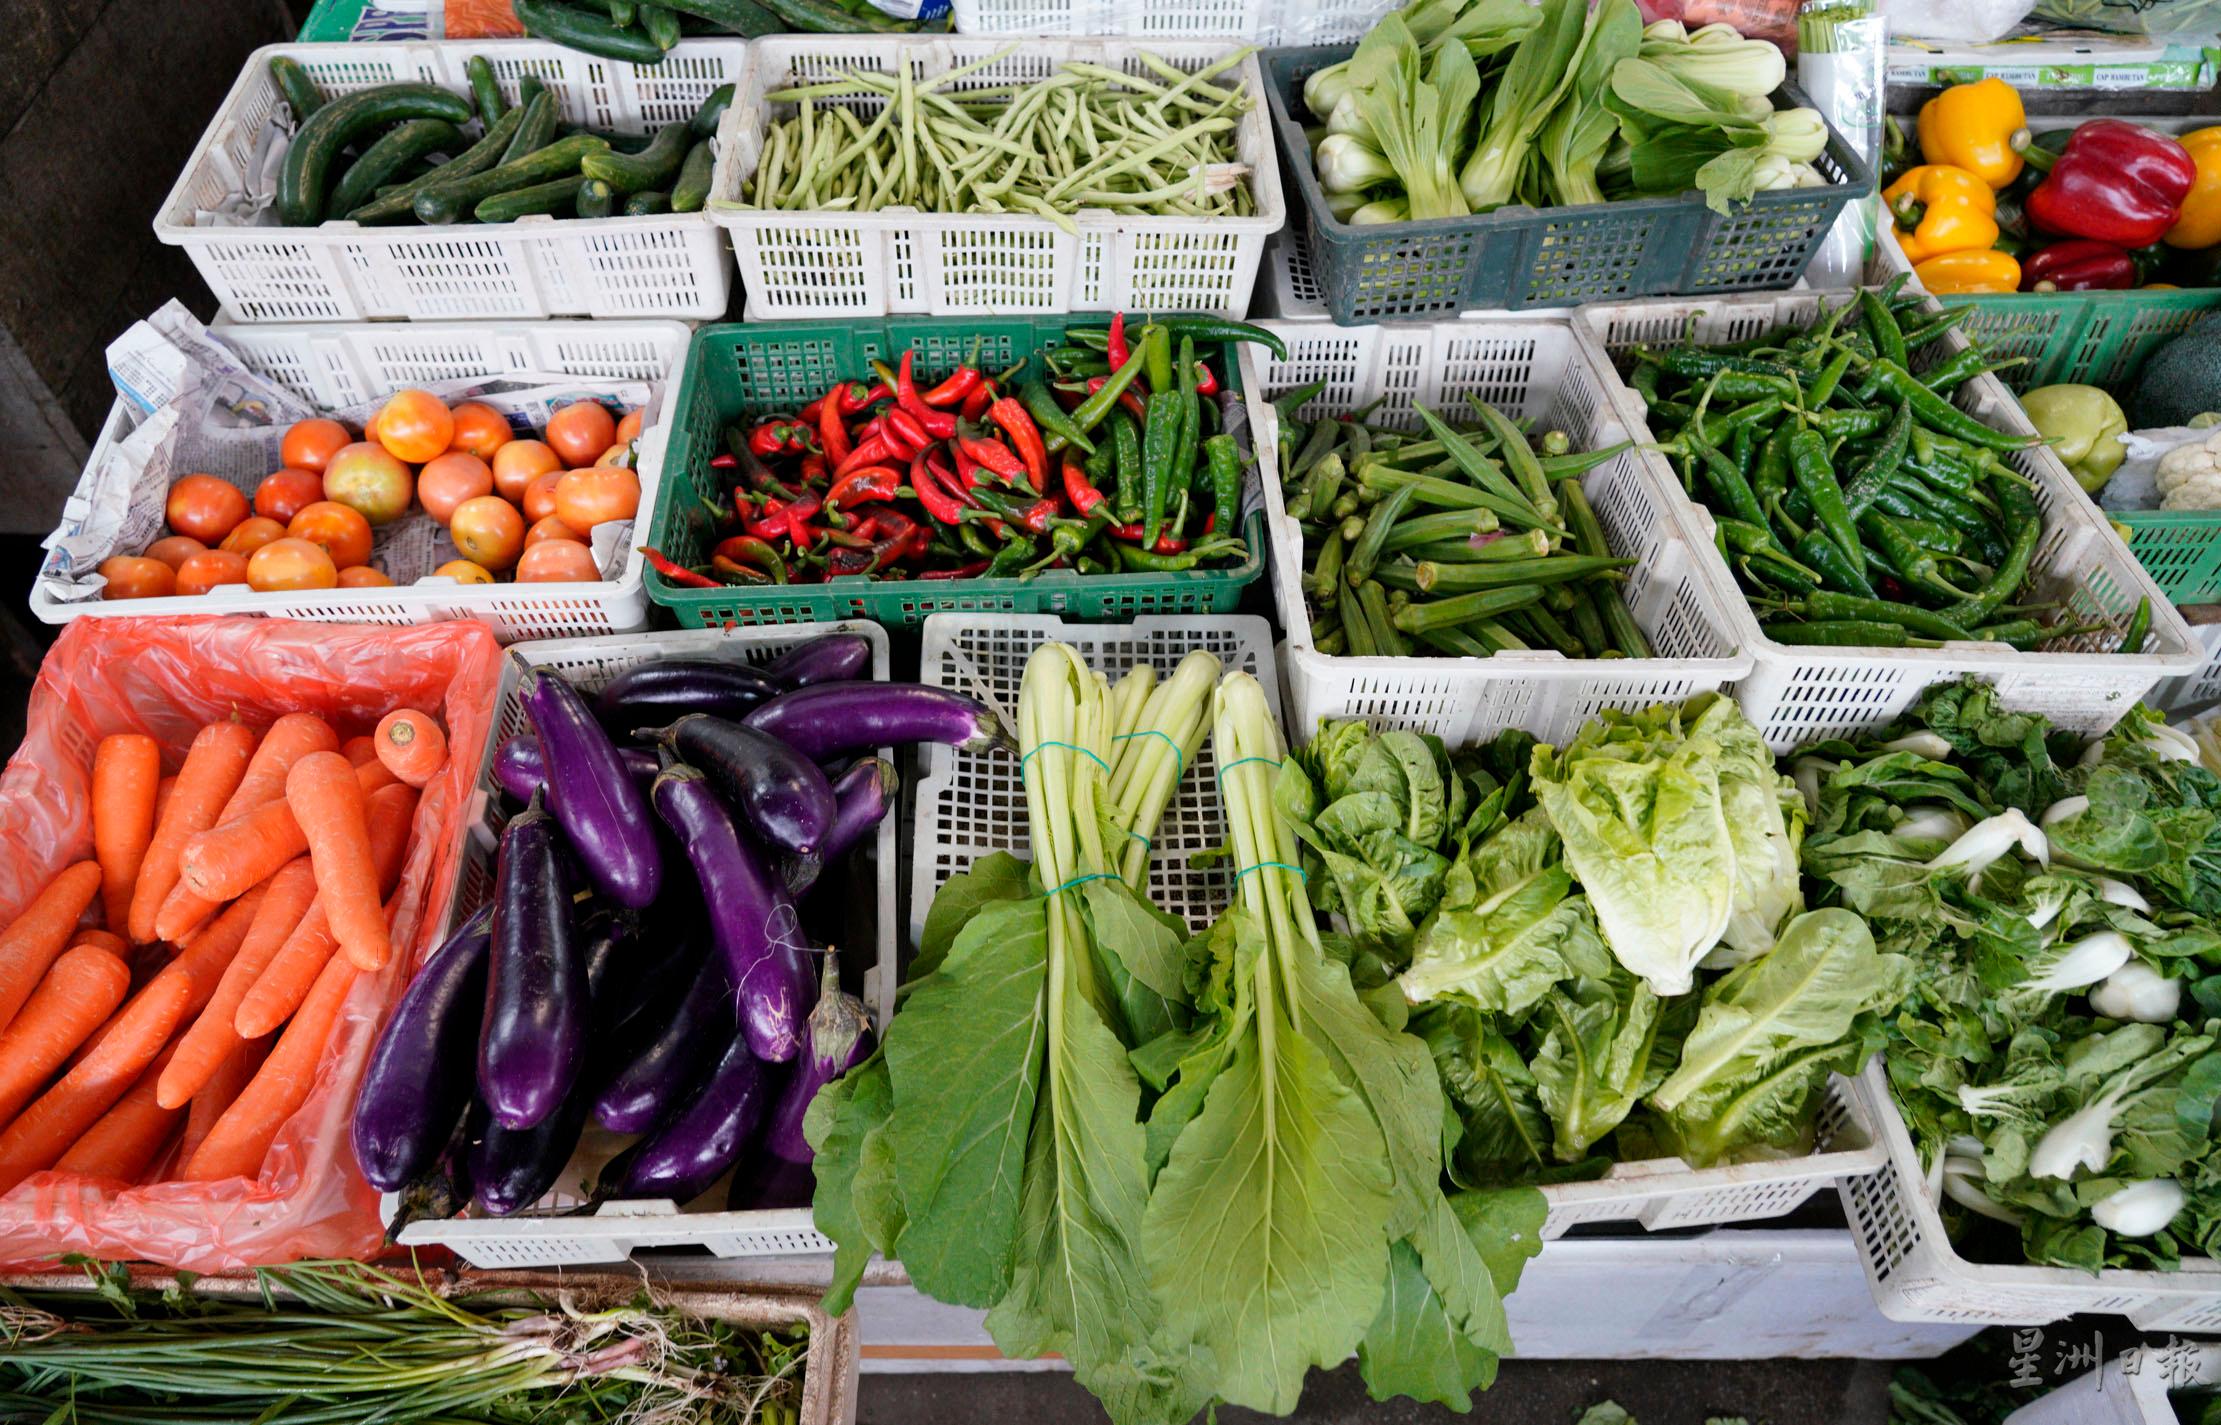 多种蔬菜如番茄、菜心、黄瓜、辣椒等目前都是涨价的情况。